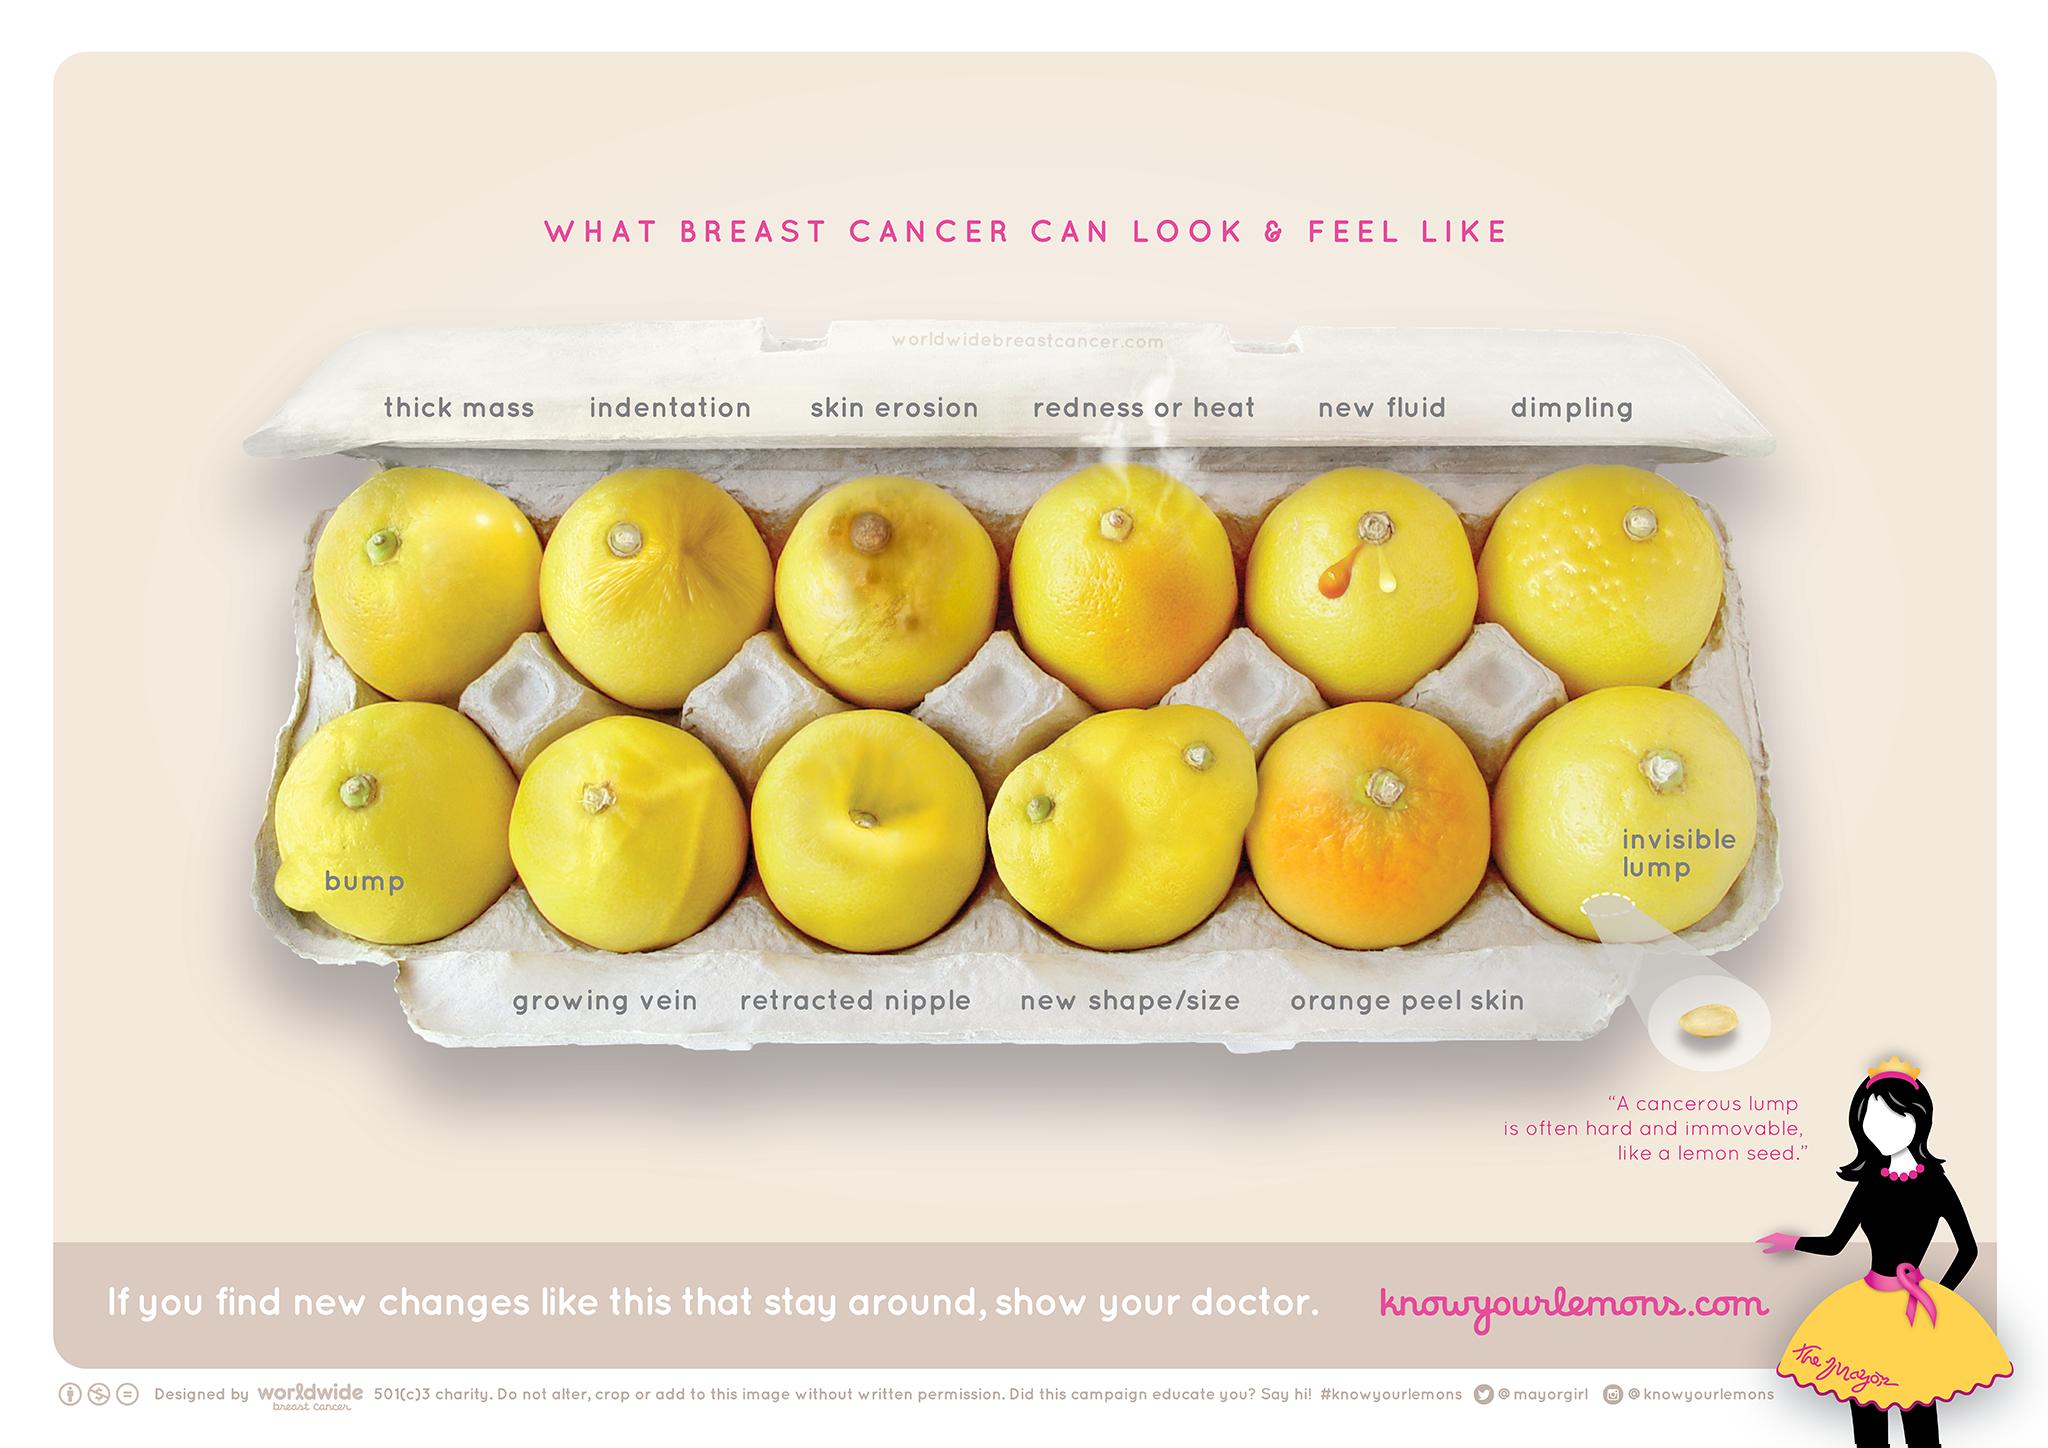 Καρκίνος μαστού: Δείτε τα λεμόνια που αποκαλύπτουν τα συμπτώματά του